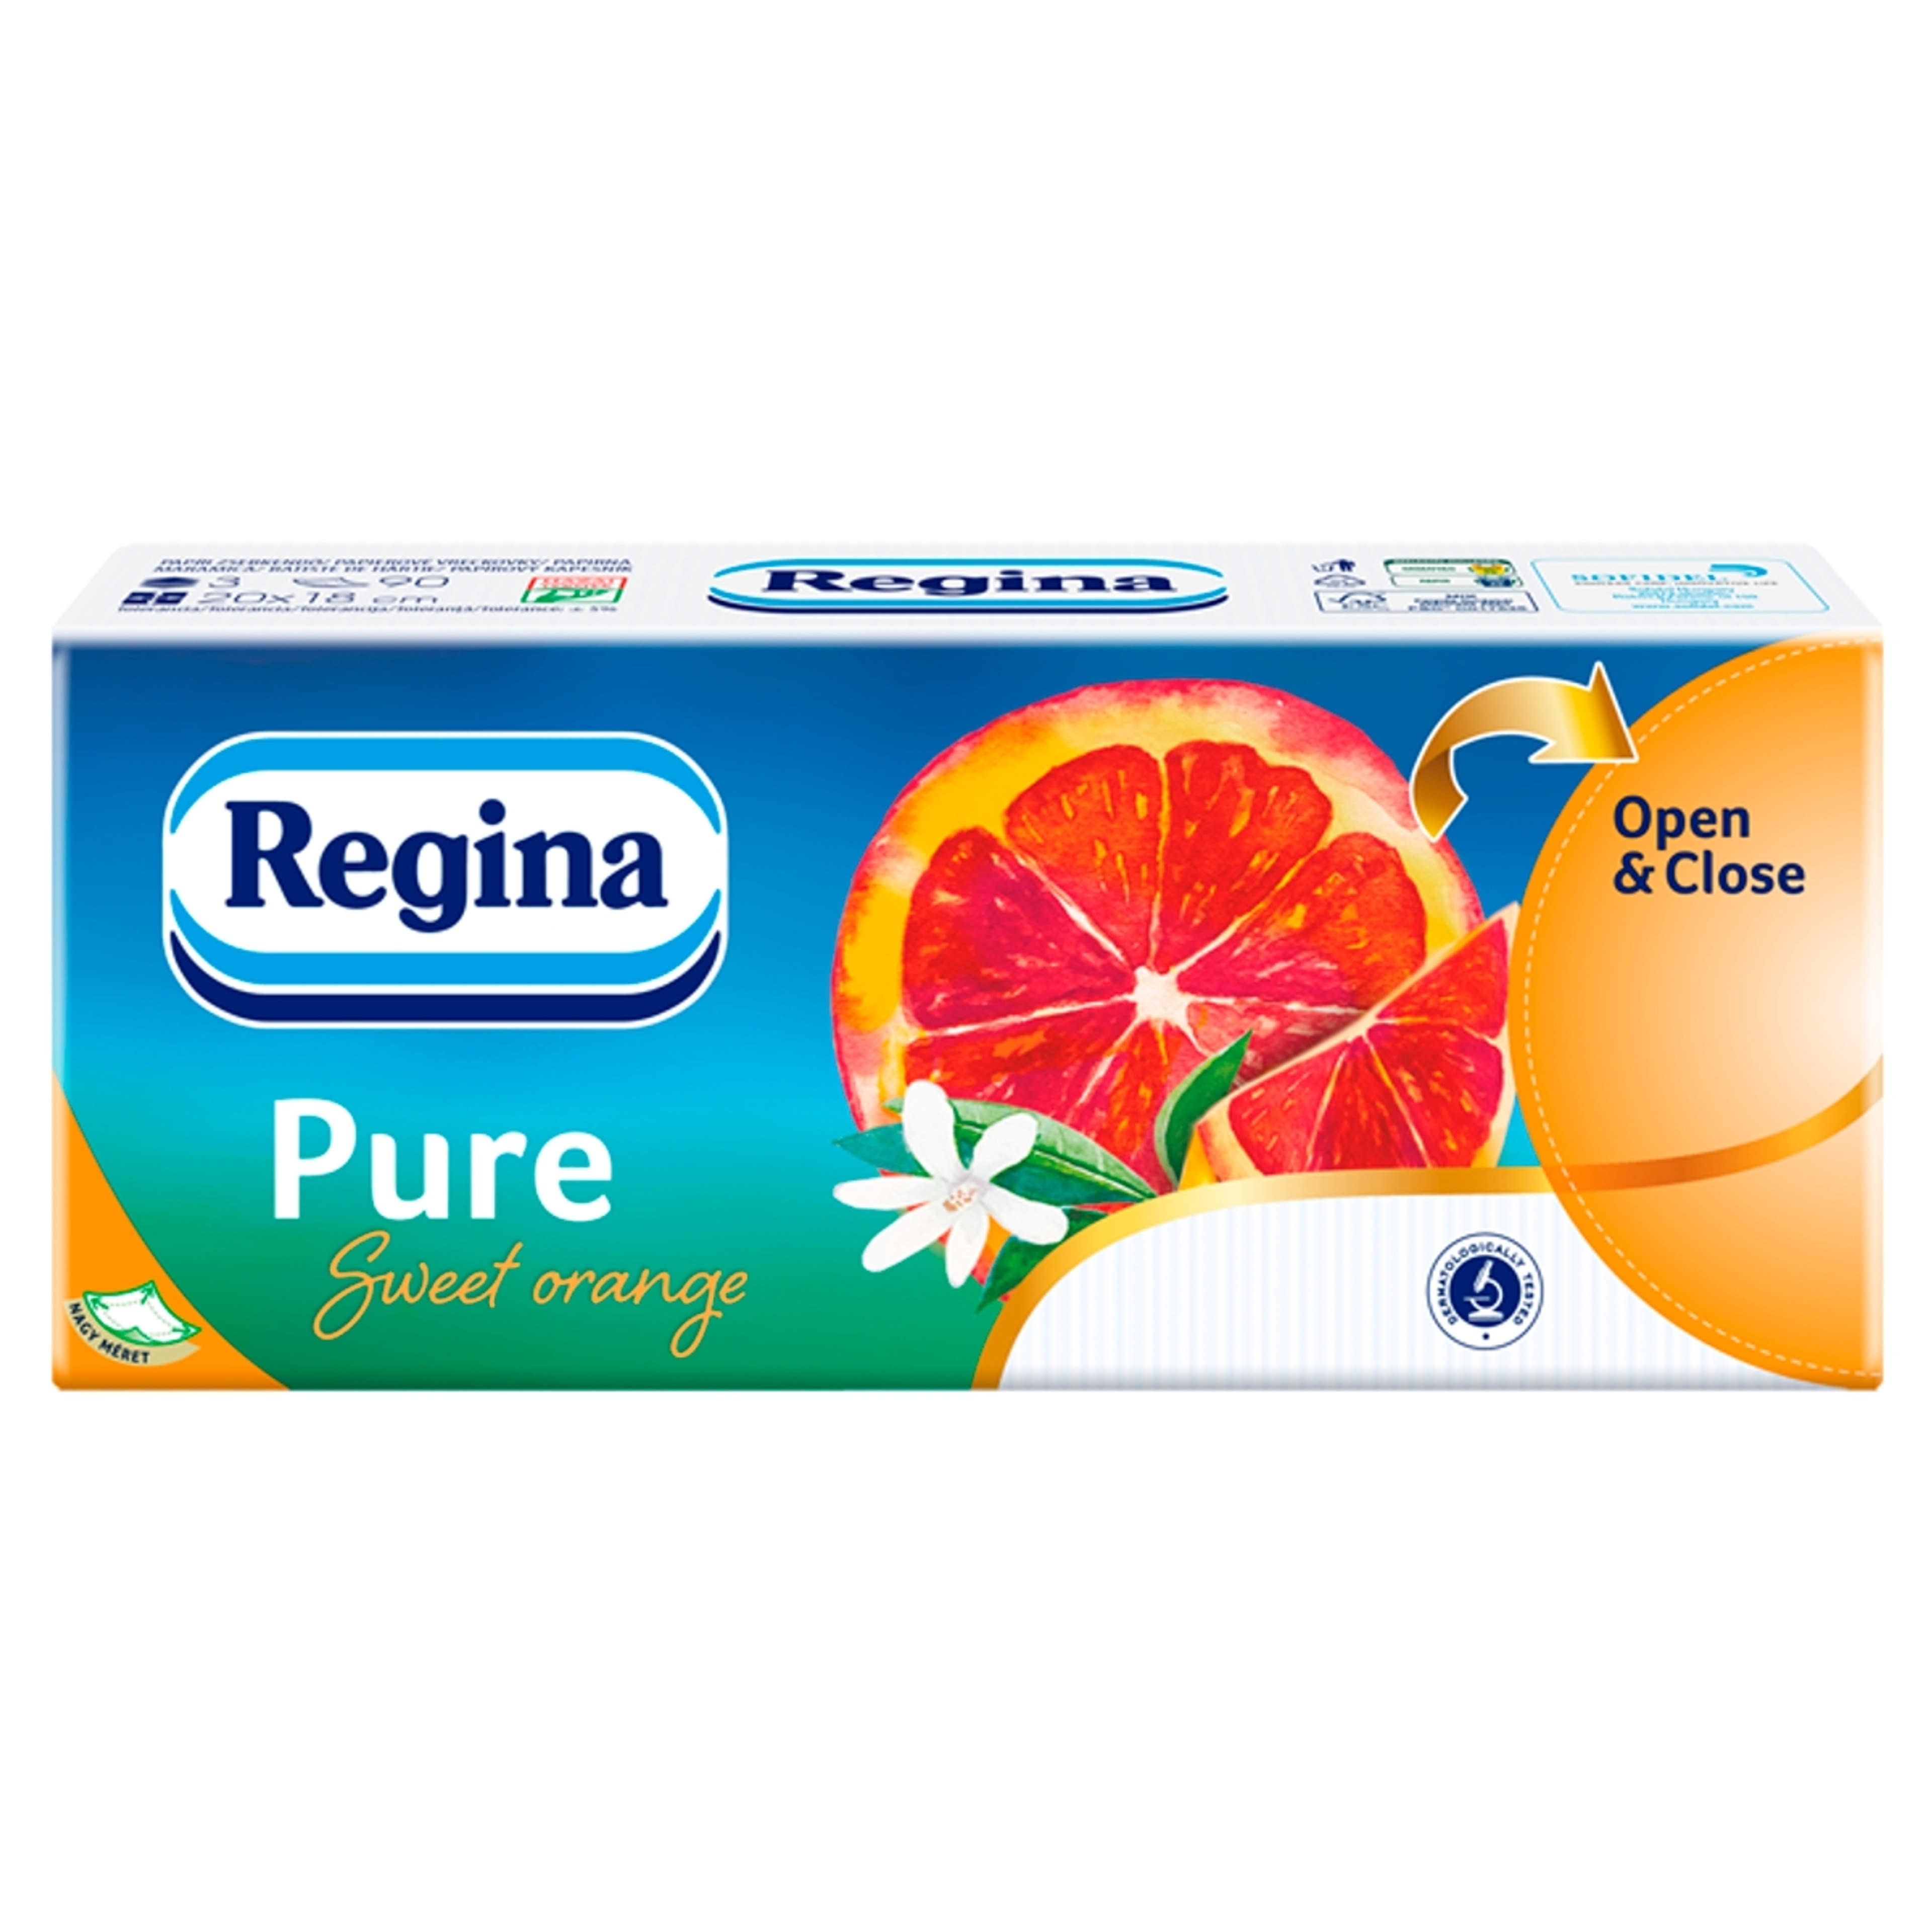 Regina papírzsebkendő pure orange 3 rétegű - 1 db